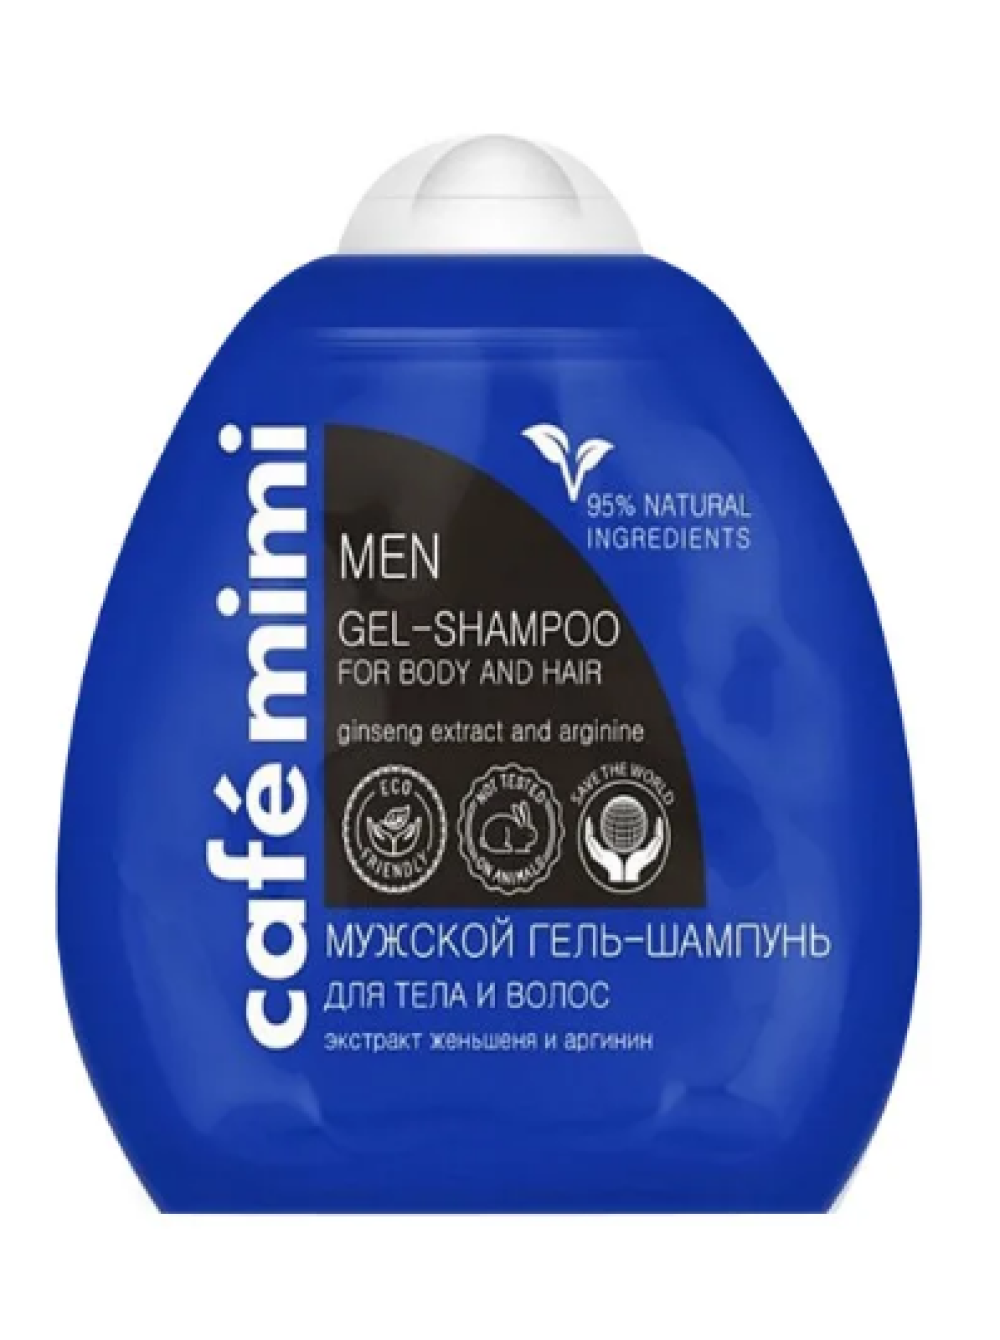 Shampoo gel. Шампунь кофе Мими мурской. Гель-шампунь для волос и тела. Гель-шампунь для мужчин 2 в 1. Кафе Мими для мужчин.